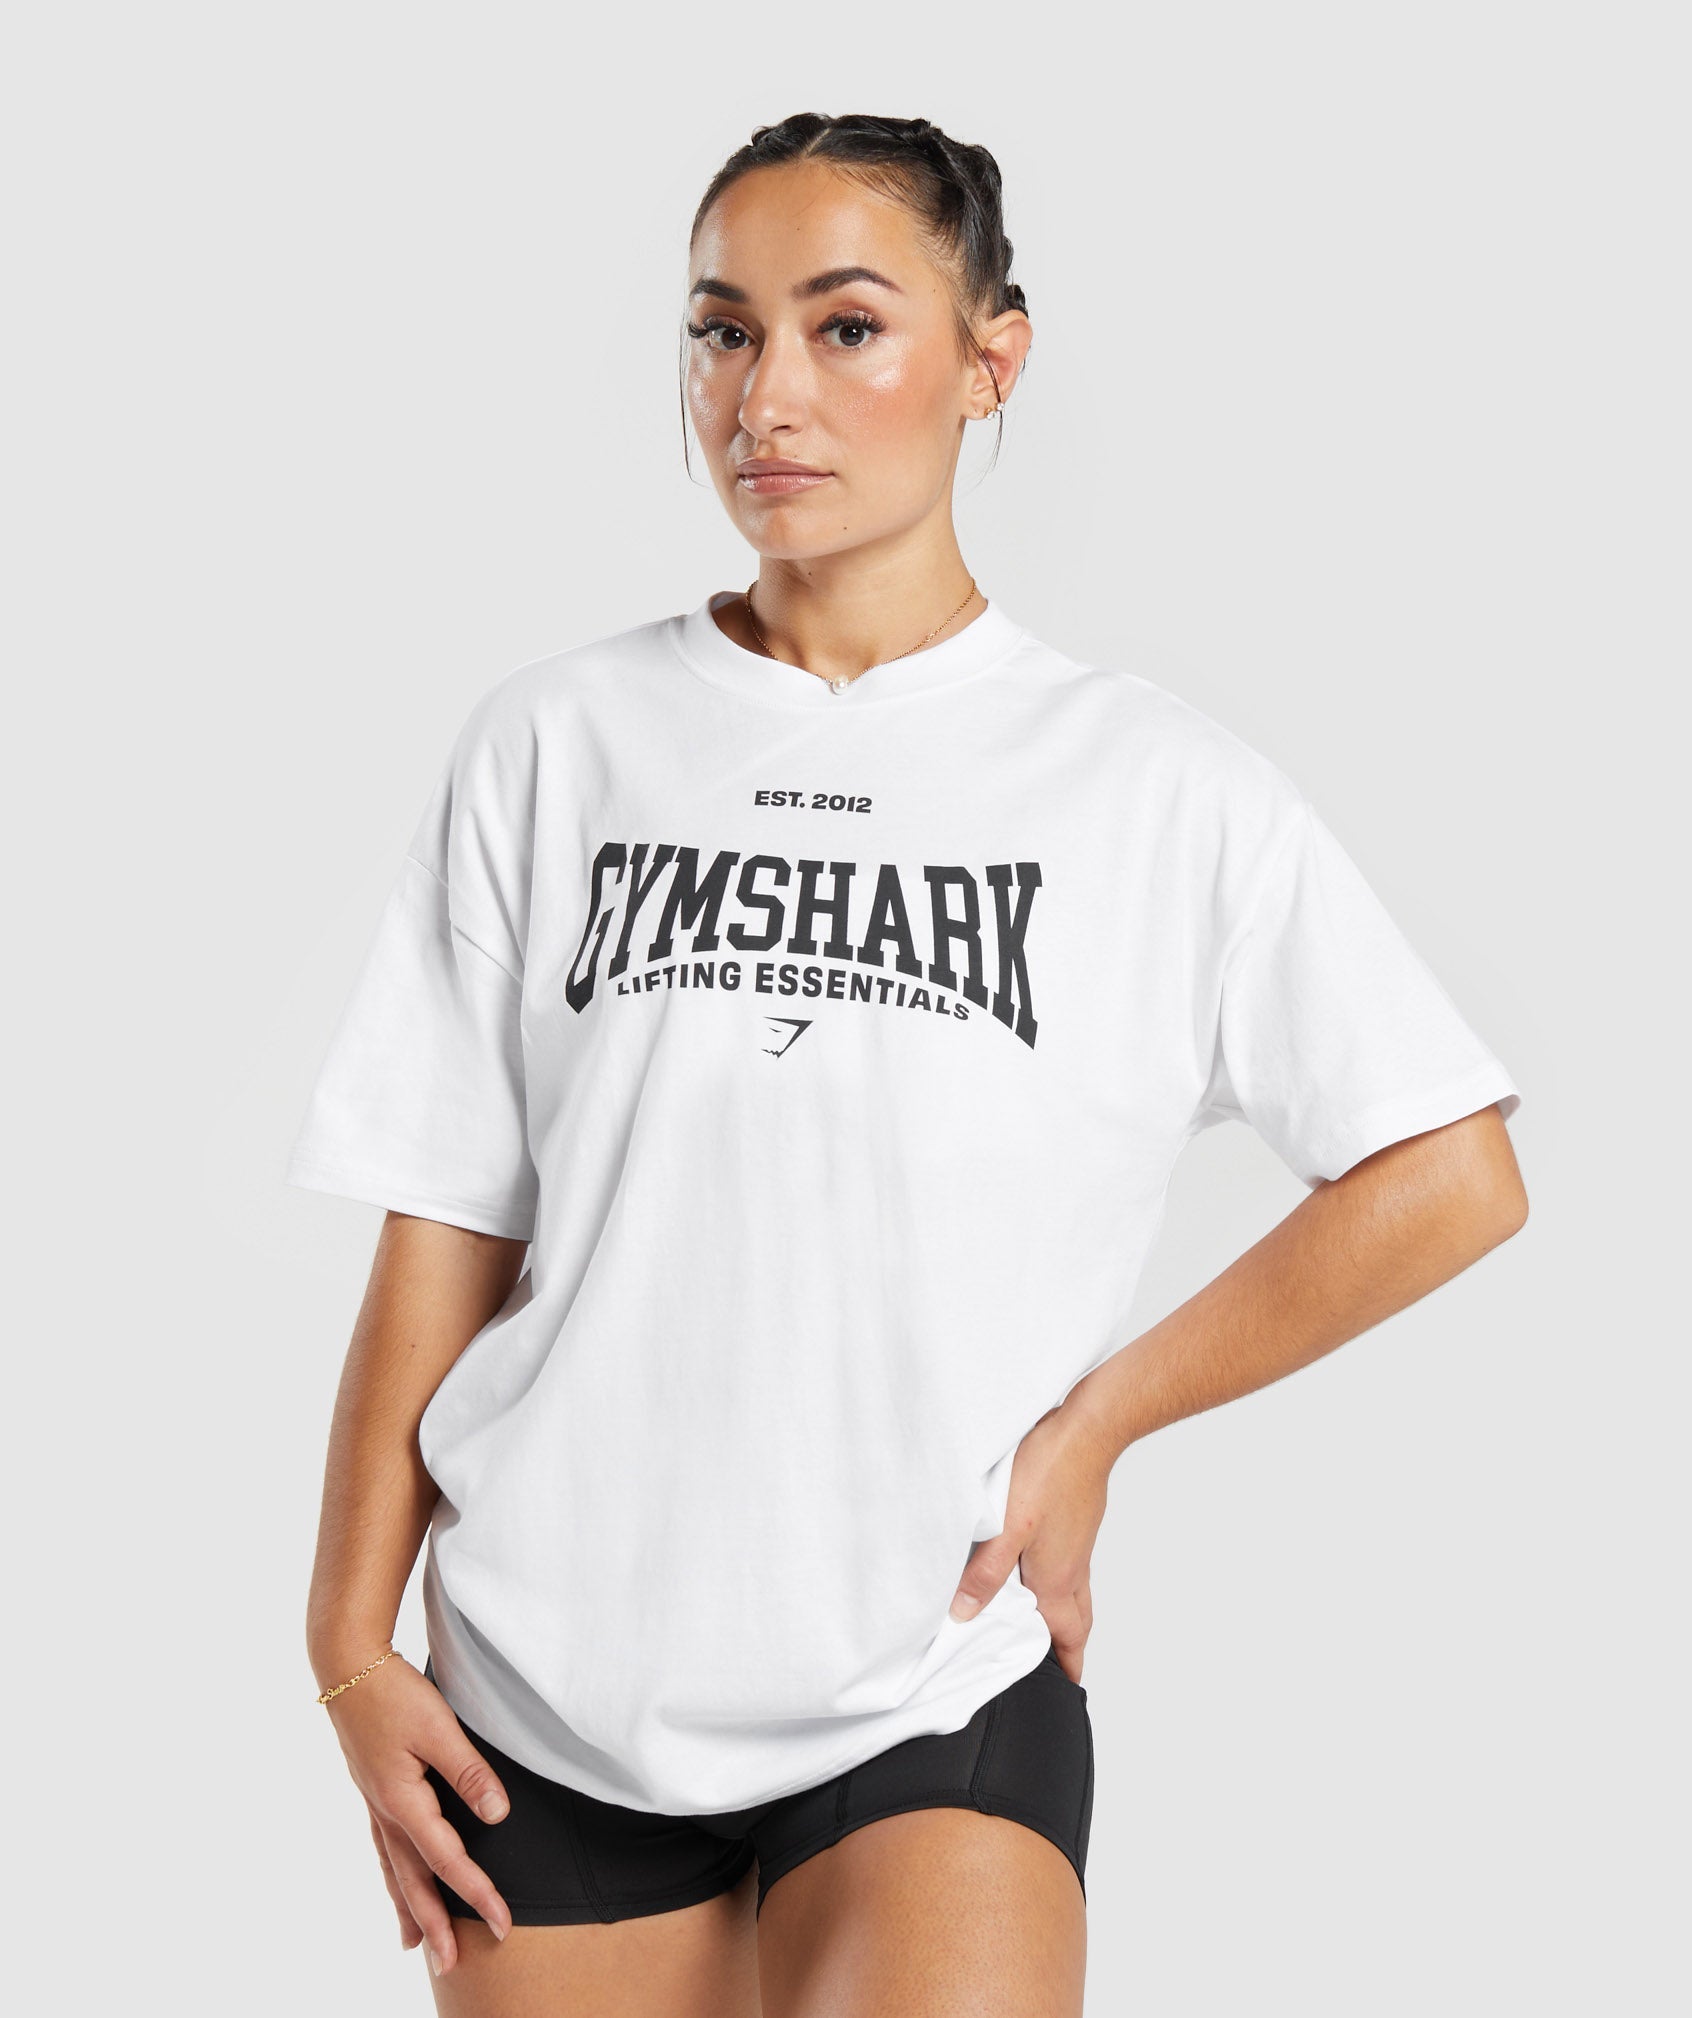 Gymshark Strength Department Oversized T-Shirt - White